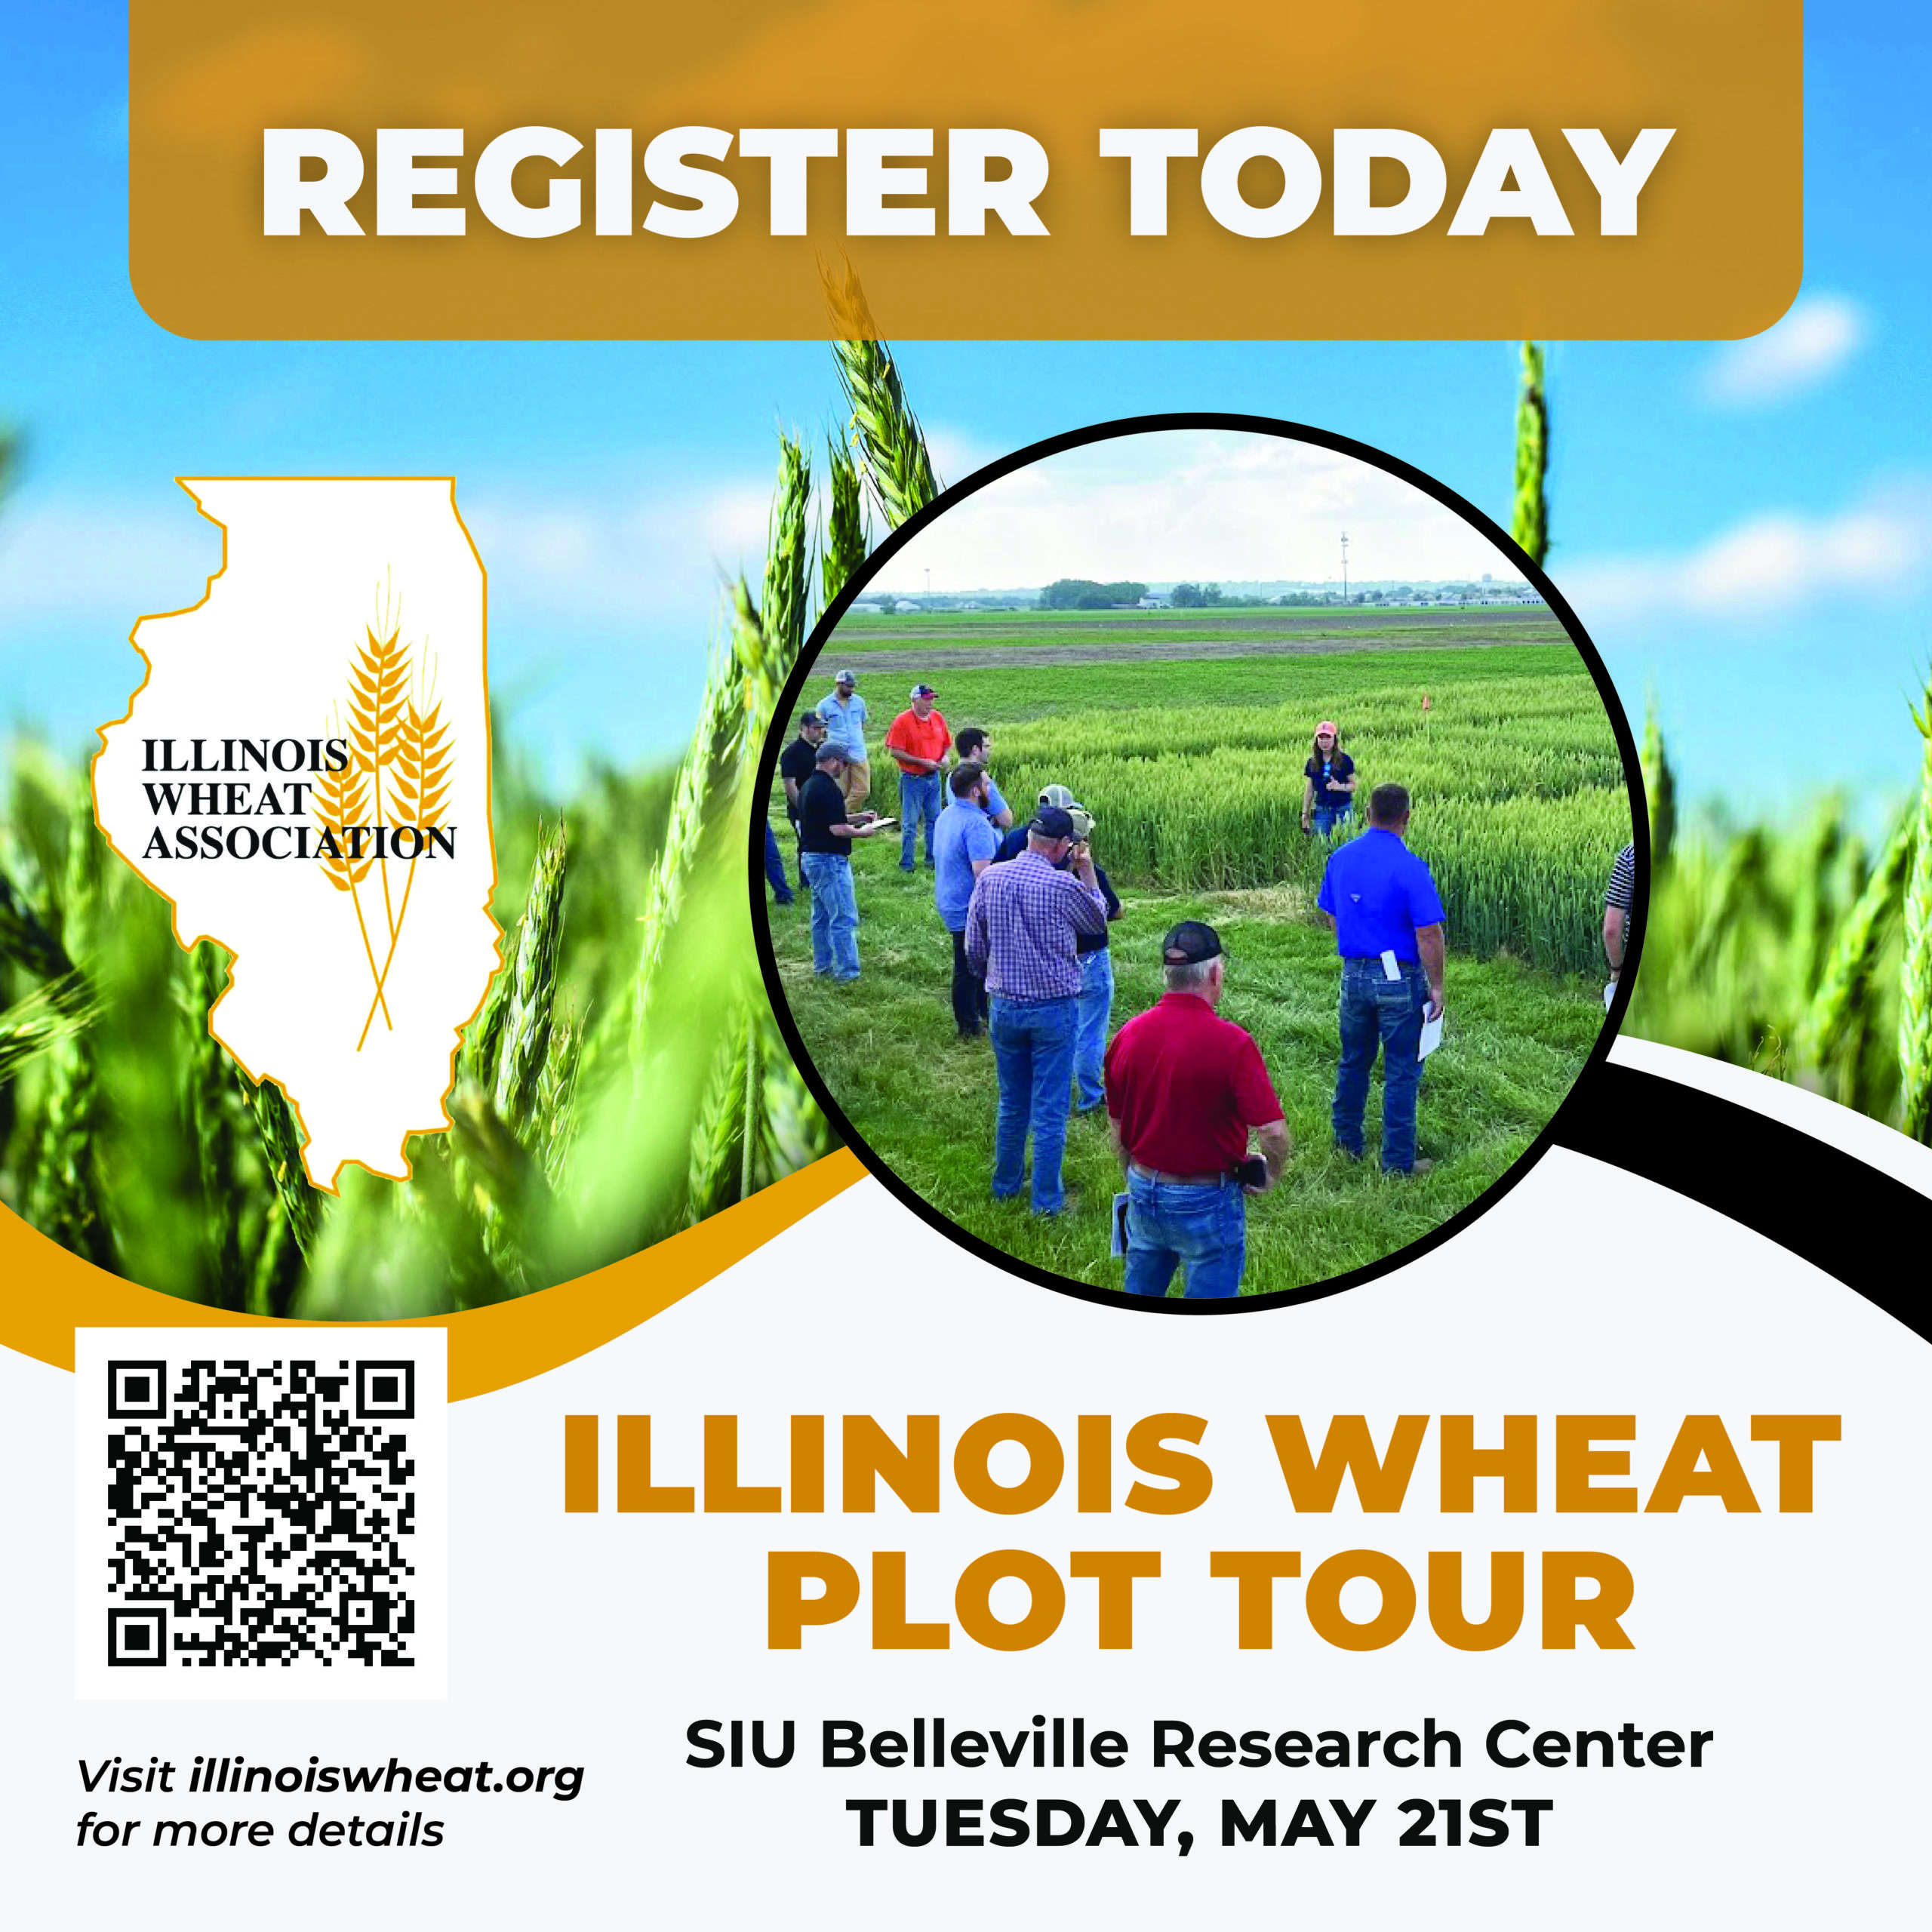 Illinois Wheat Association Summer Events